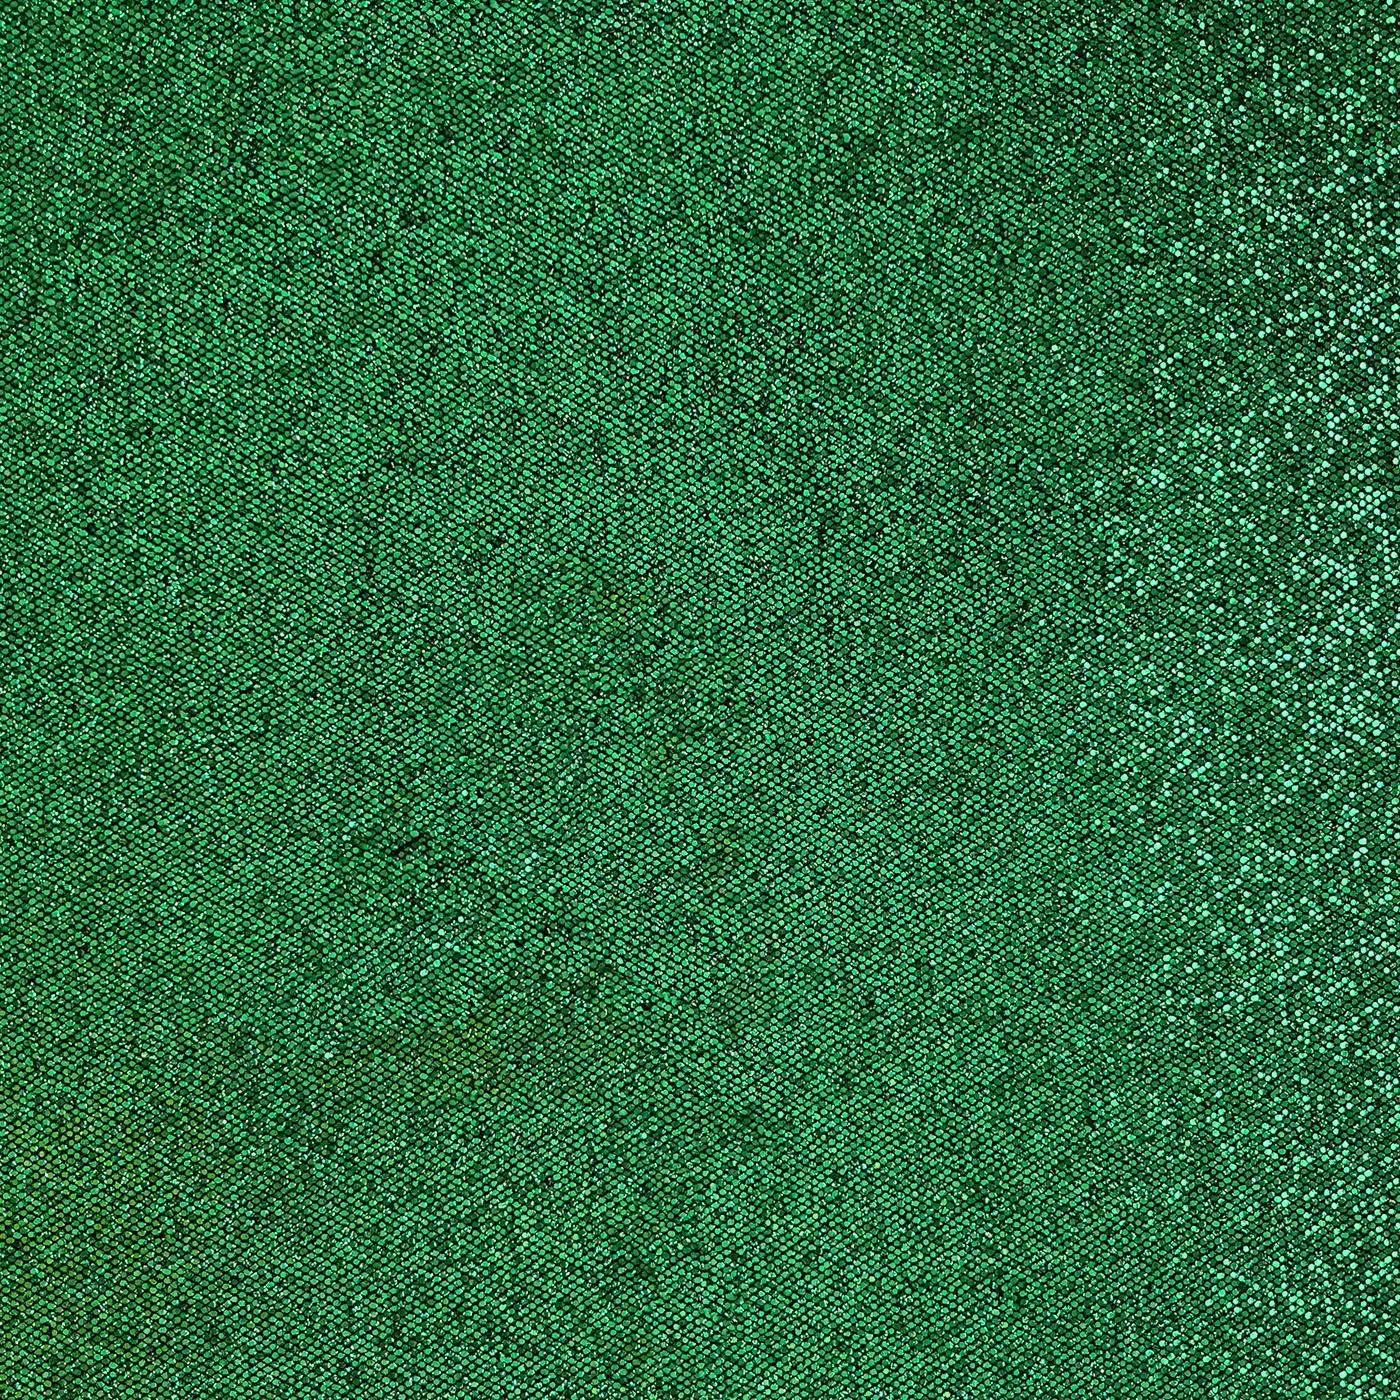 SHAMROCK Sequin Glitter Cardstock - Green disco ball glitter 